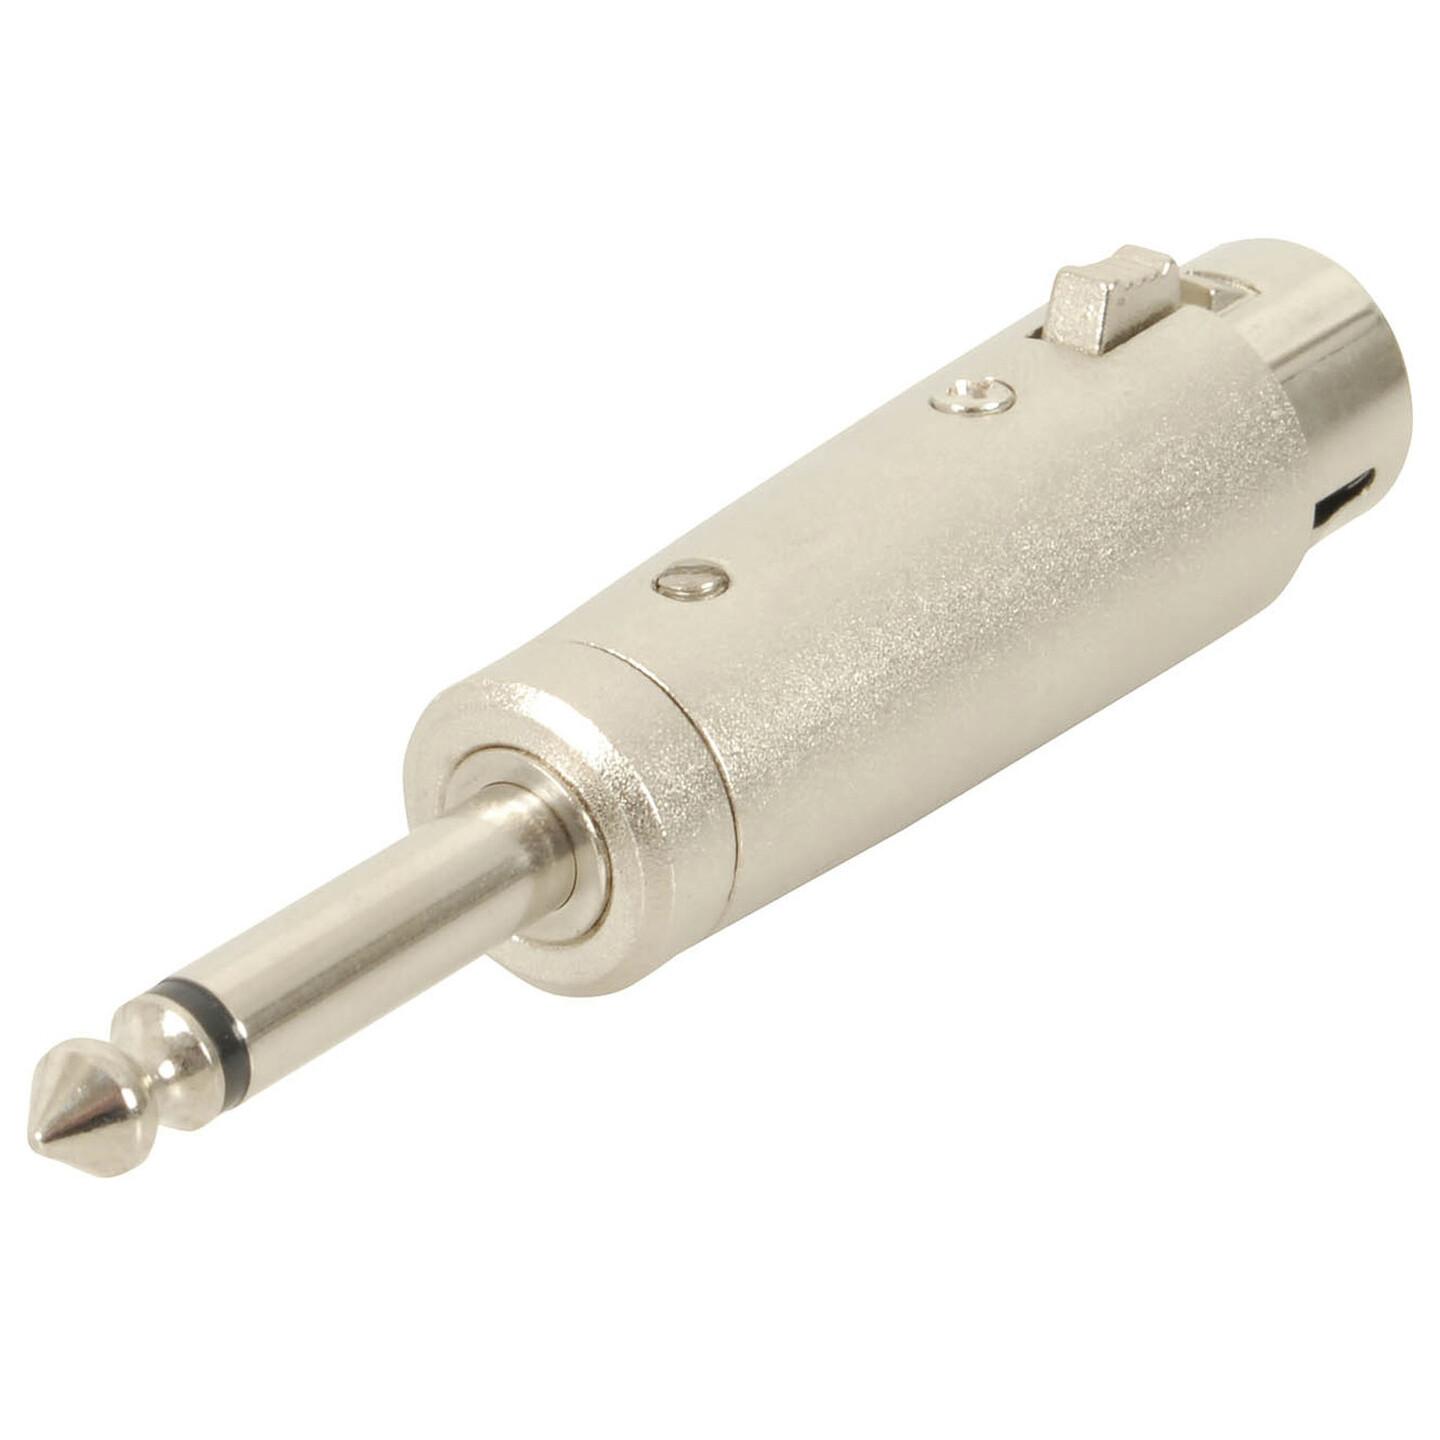 Female 3 Pin Cannon/XLR to 6.5mm Plug Adaptor